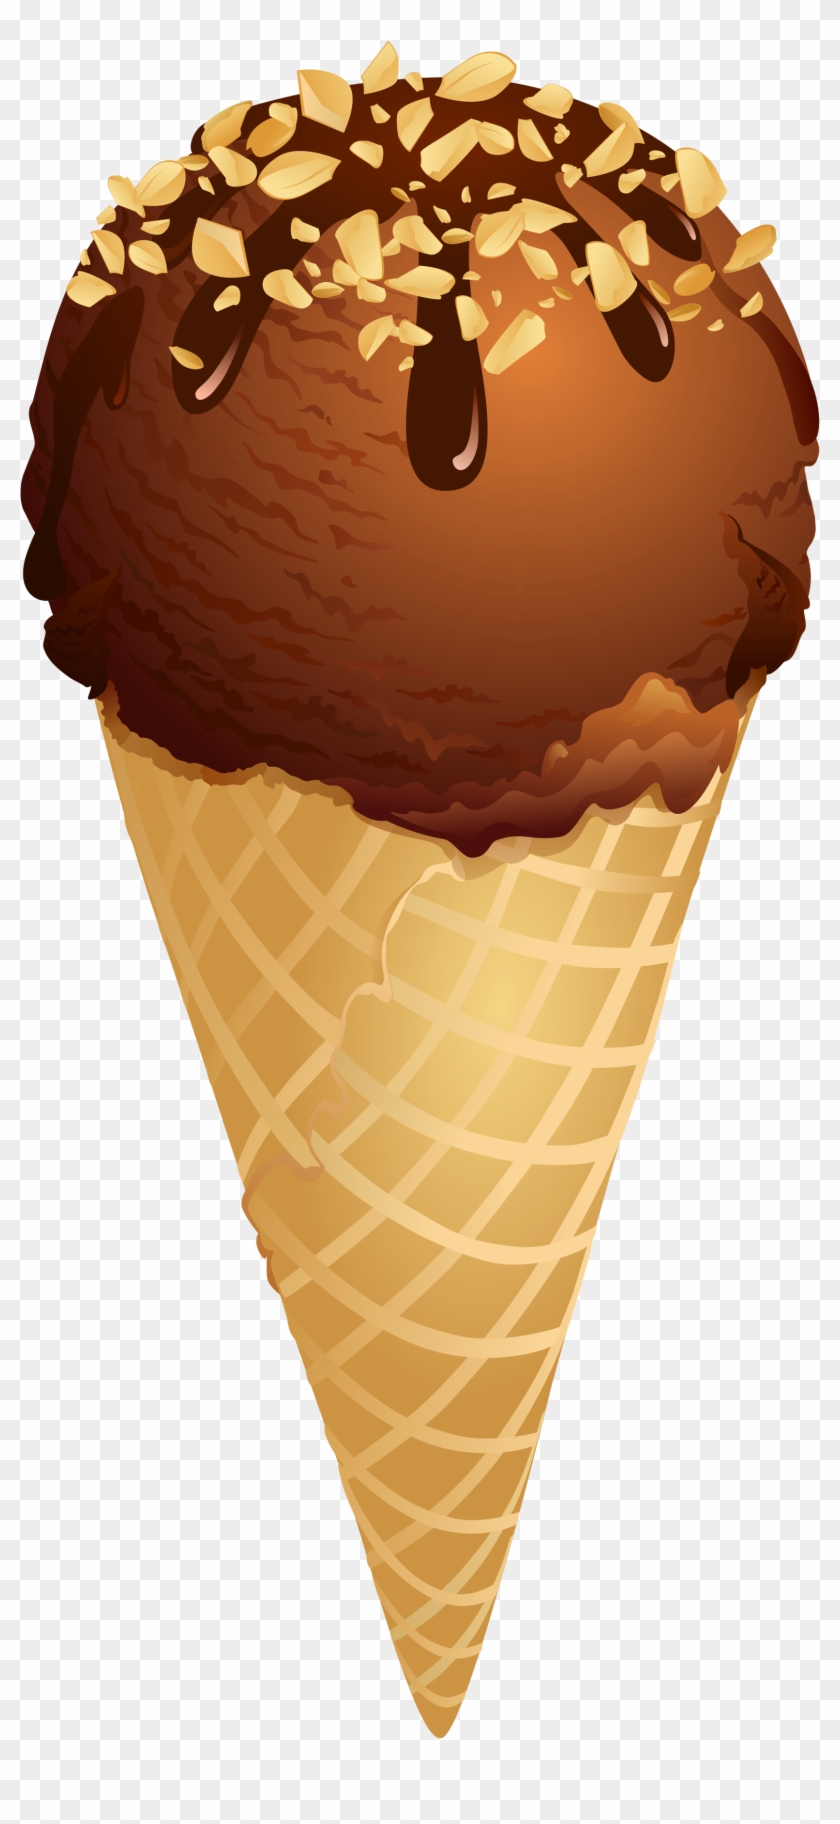 ice cream cone clipart transparent